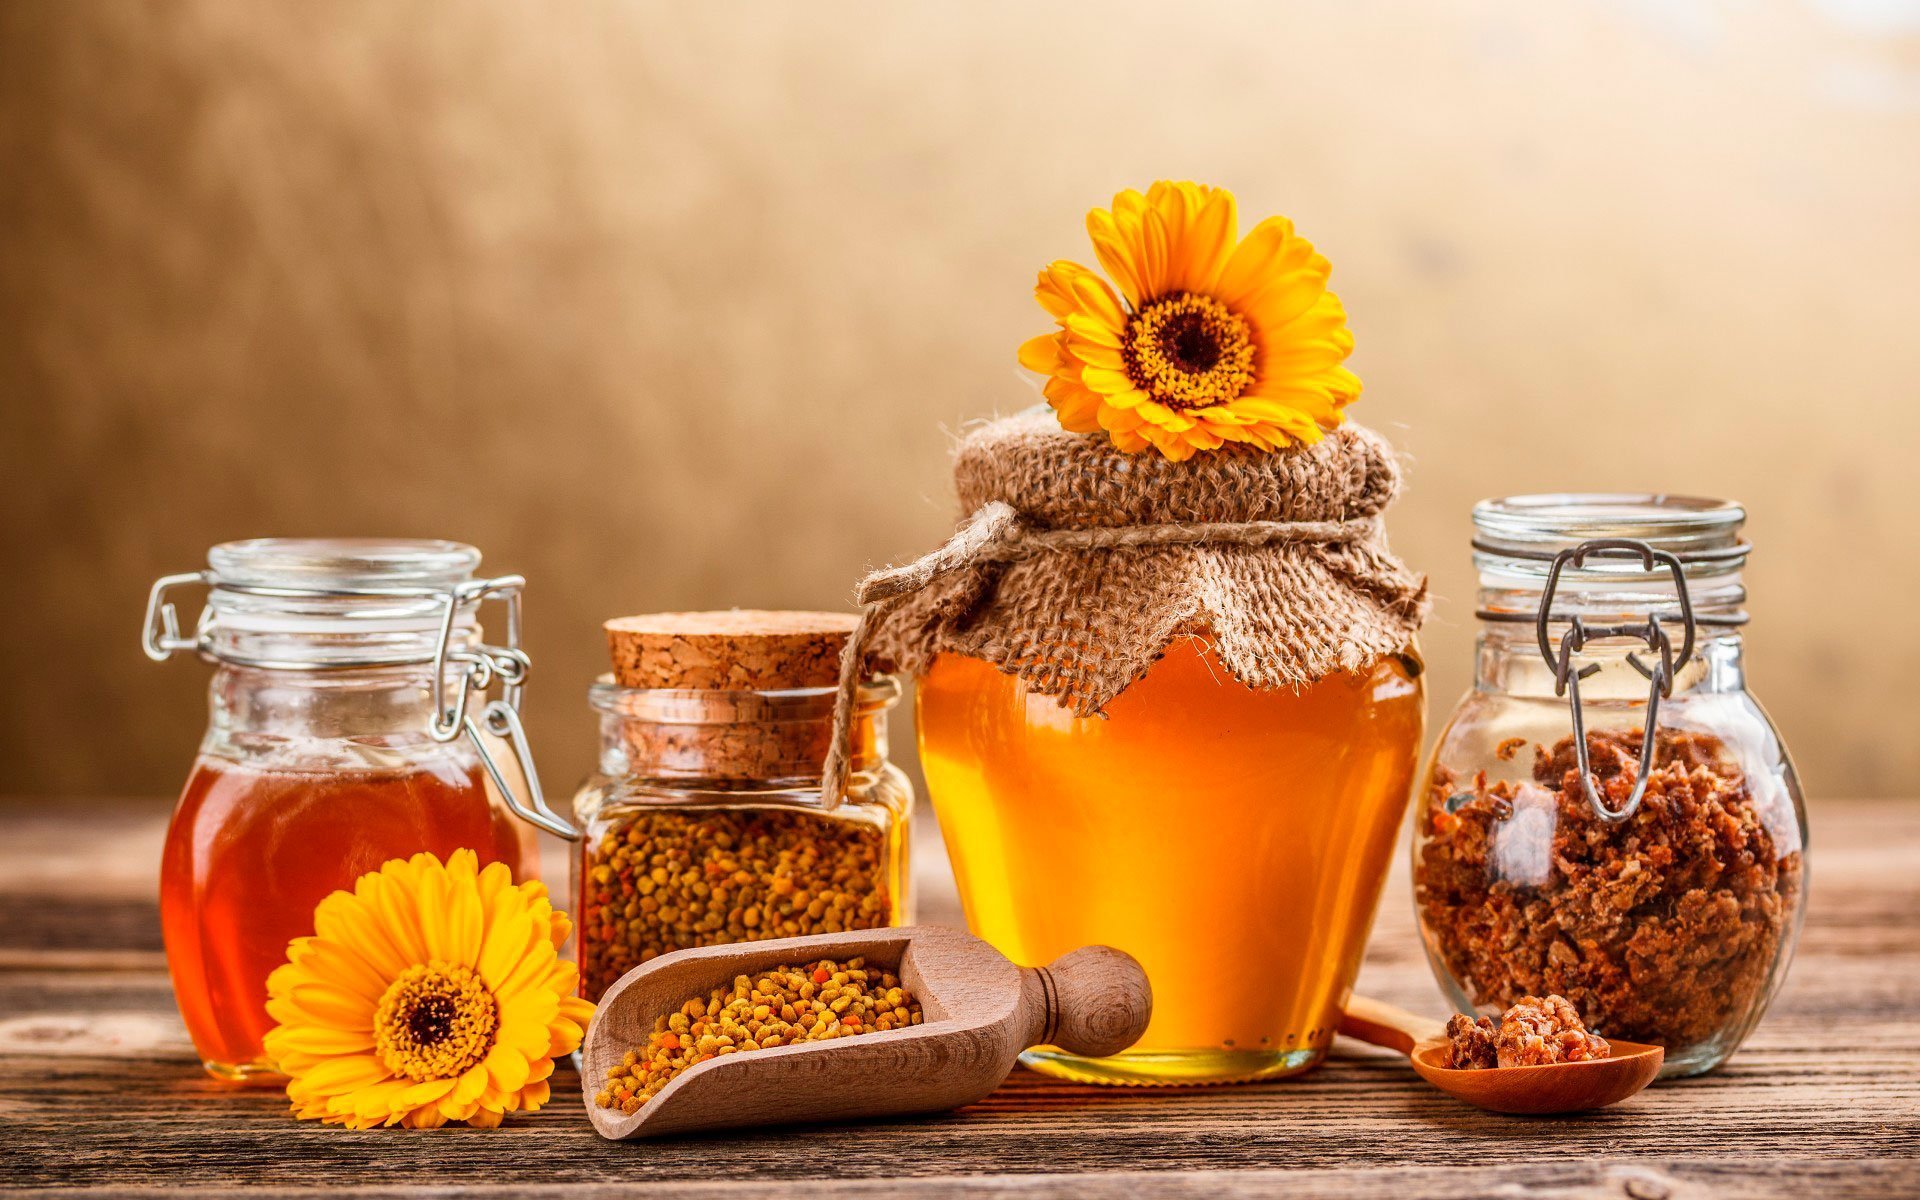 Мёд и прополис помогут восстановить потенцию